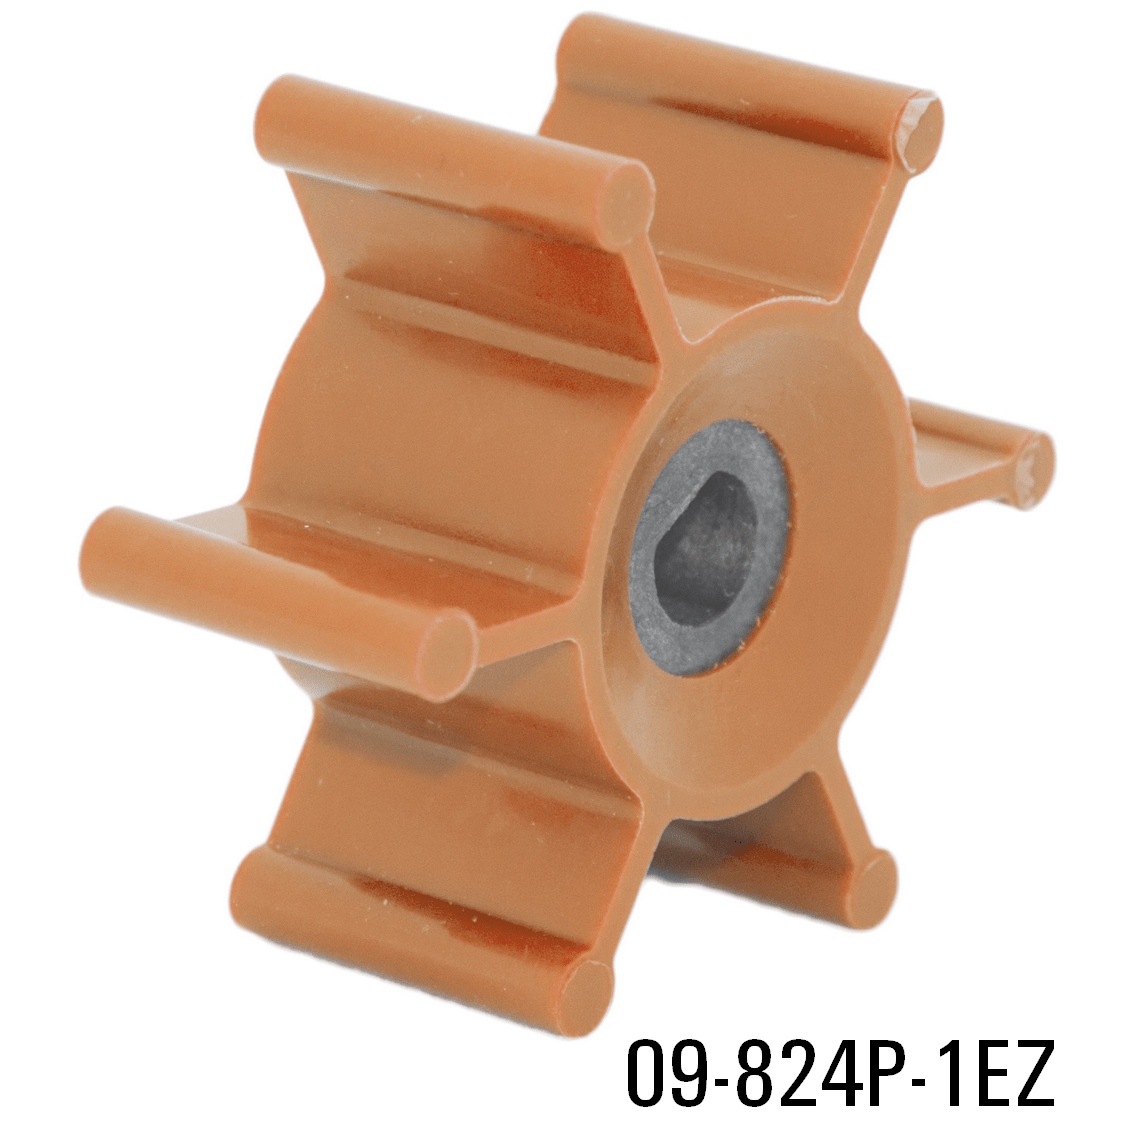 09-824P-2 of Johnson Pumps Flexible Impellers - MC97, Nitrile & Neoprene